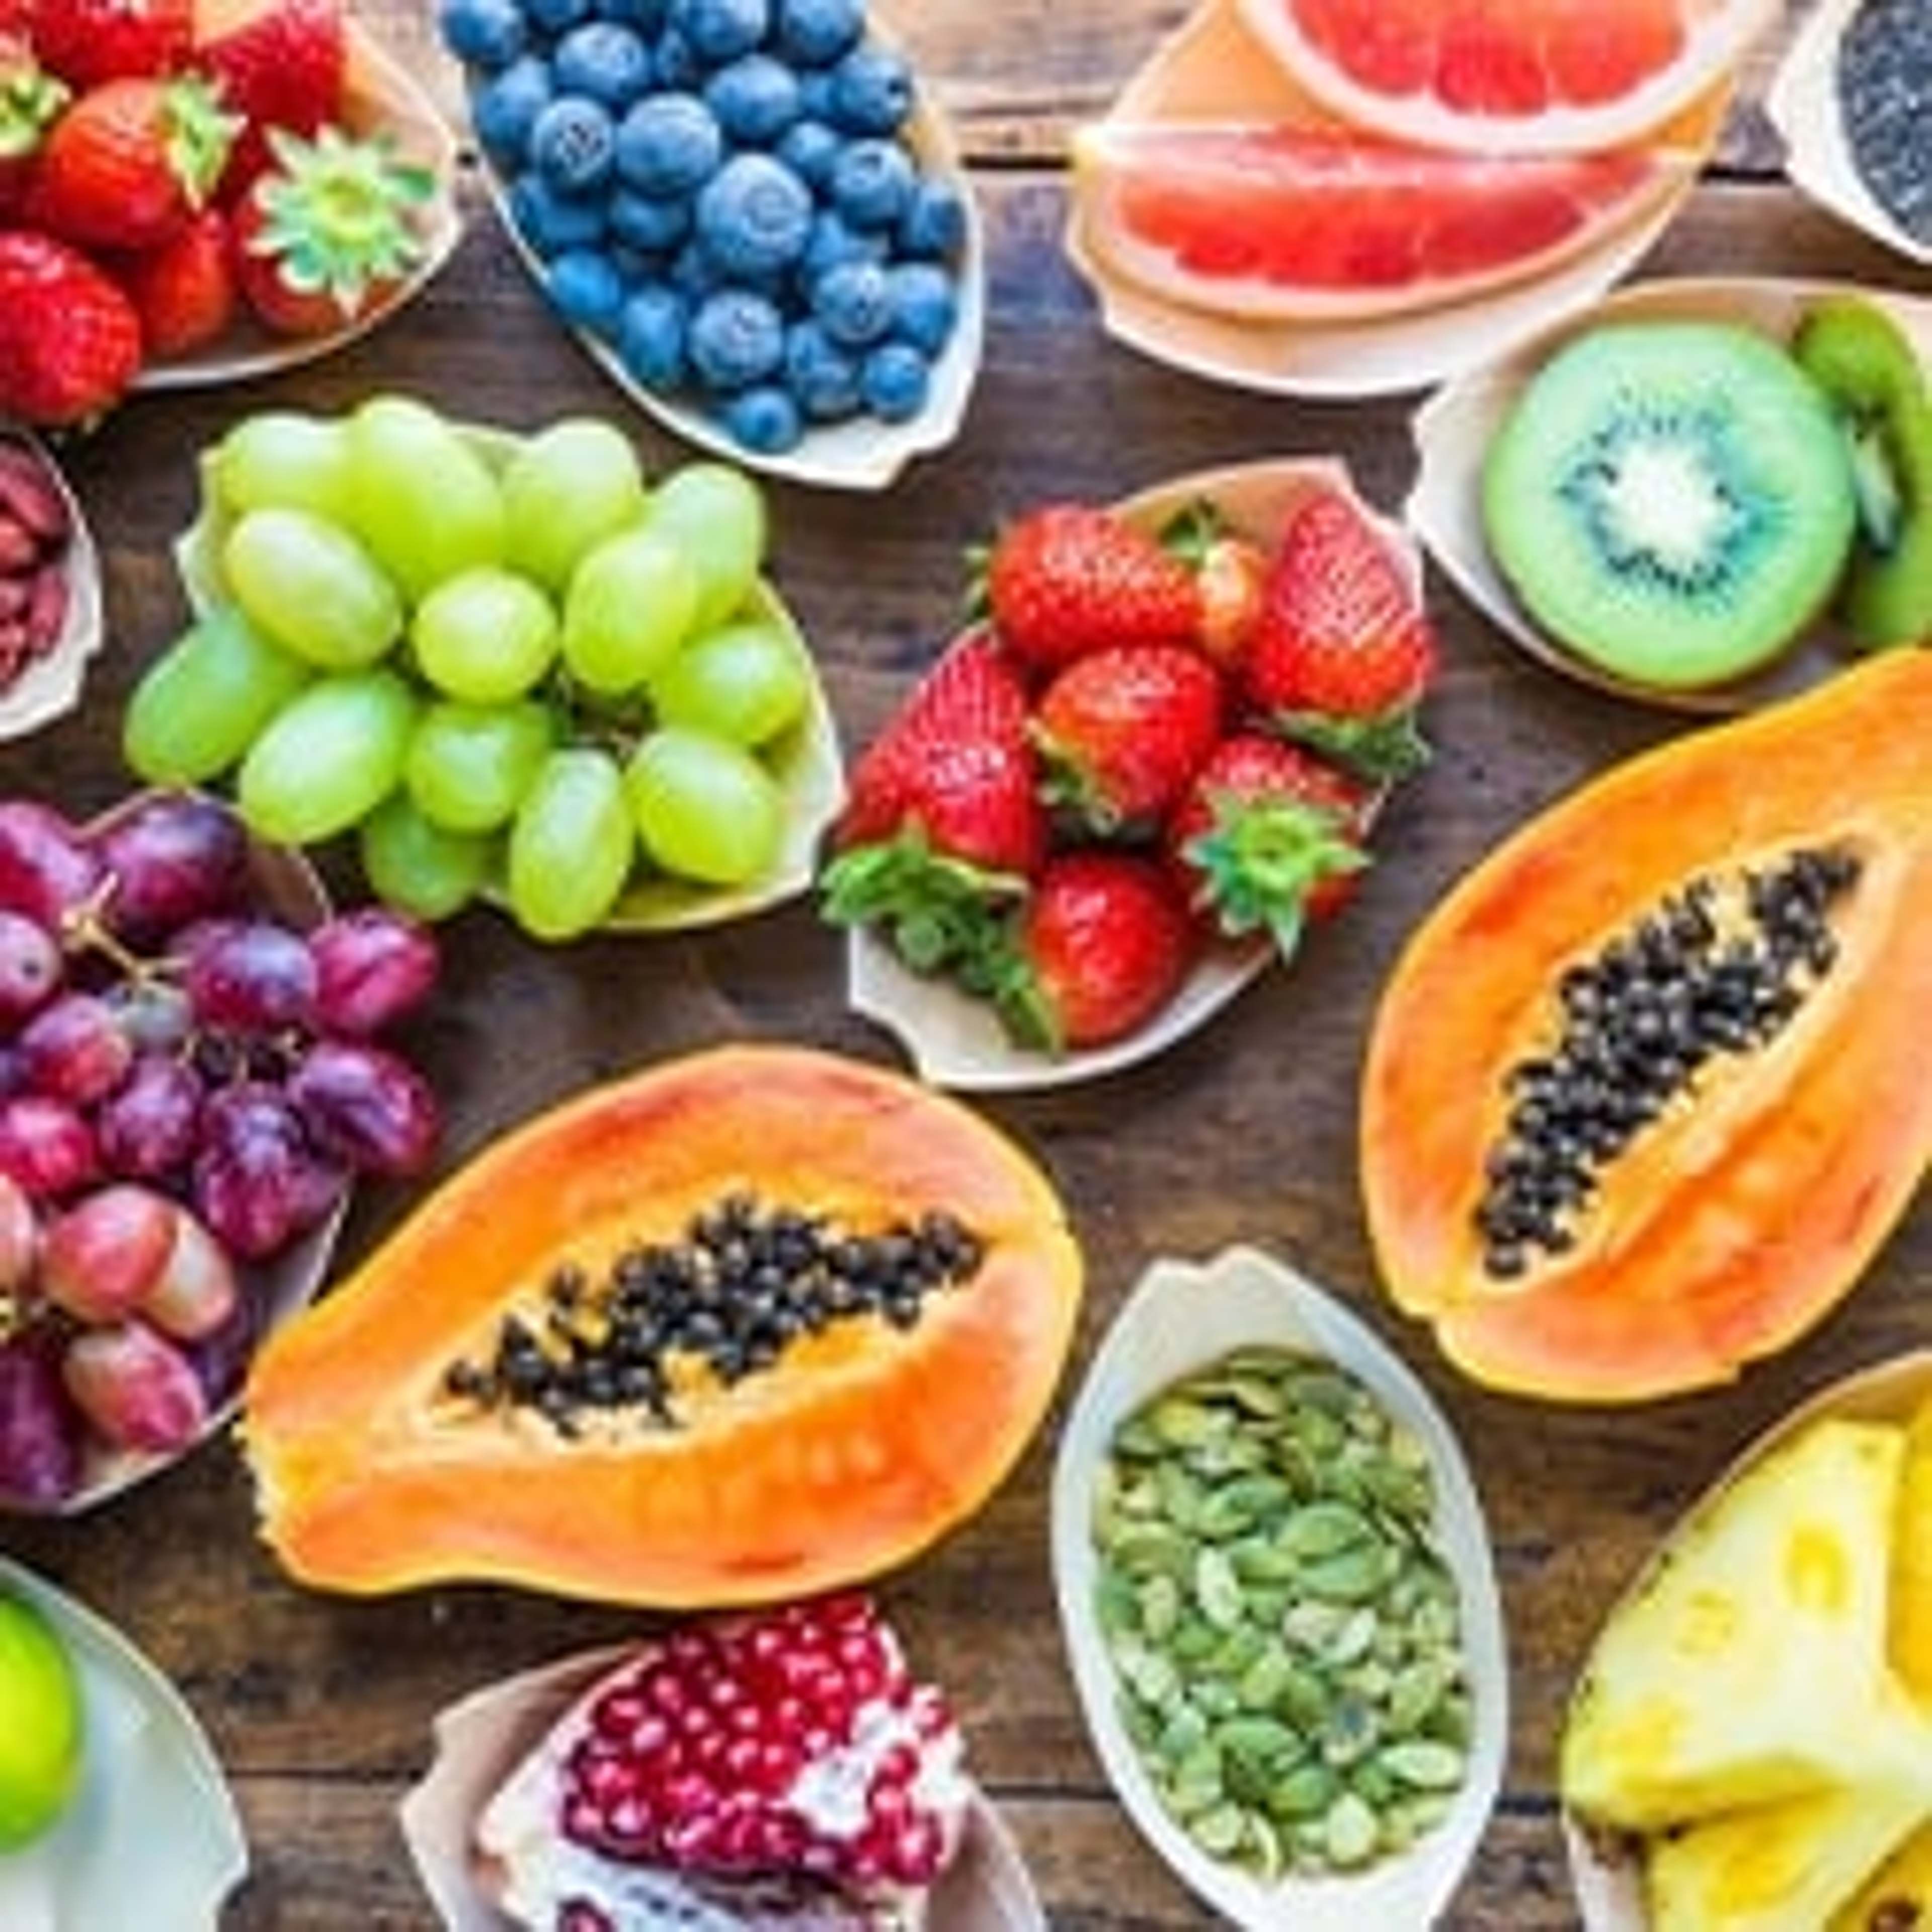 Les superfruits contiennent des quantités supérieures à la moyenne de nutriments vitaux et sont de puissants antioxydants pour lutter contre les radicaux libres.